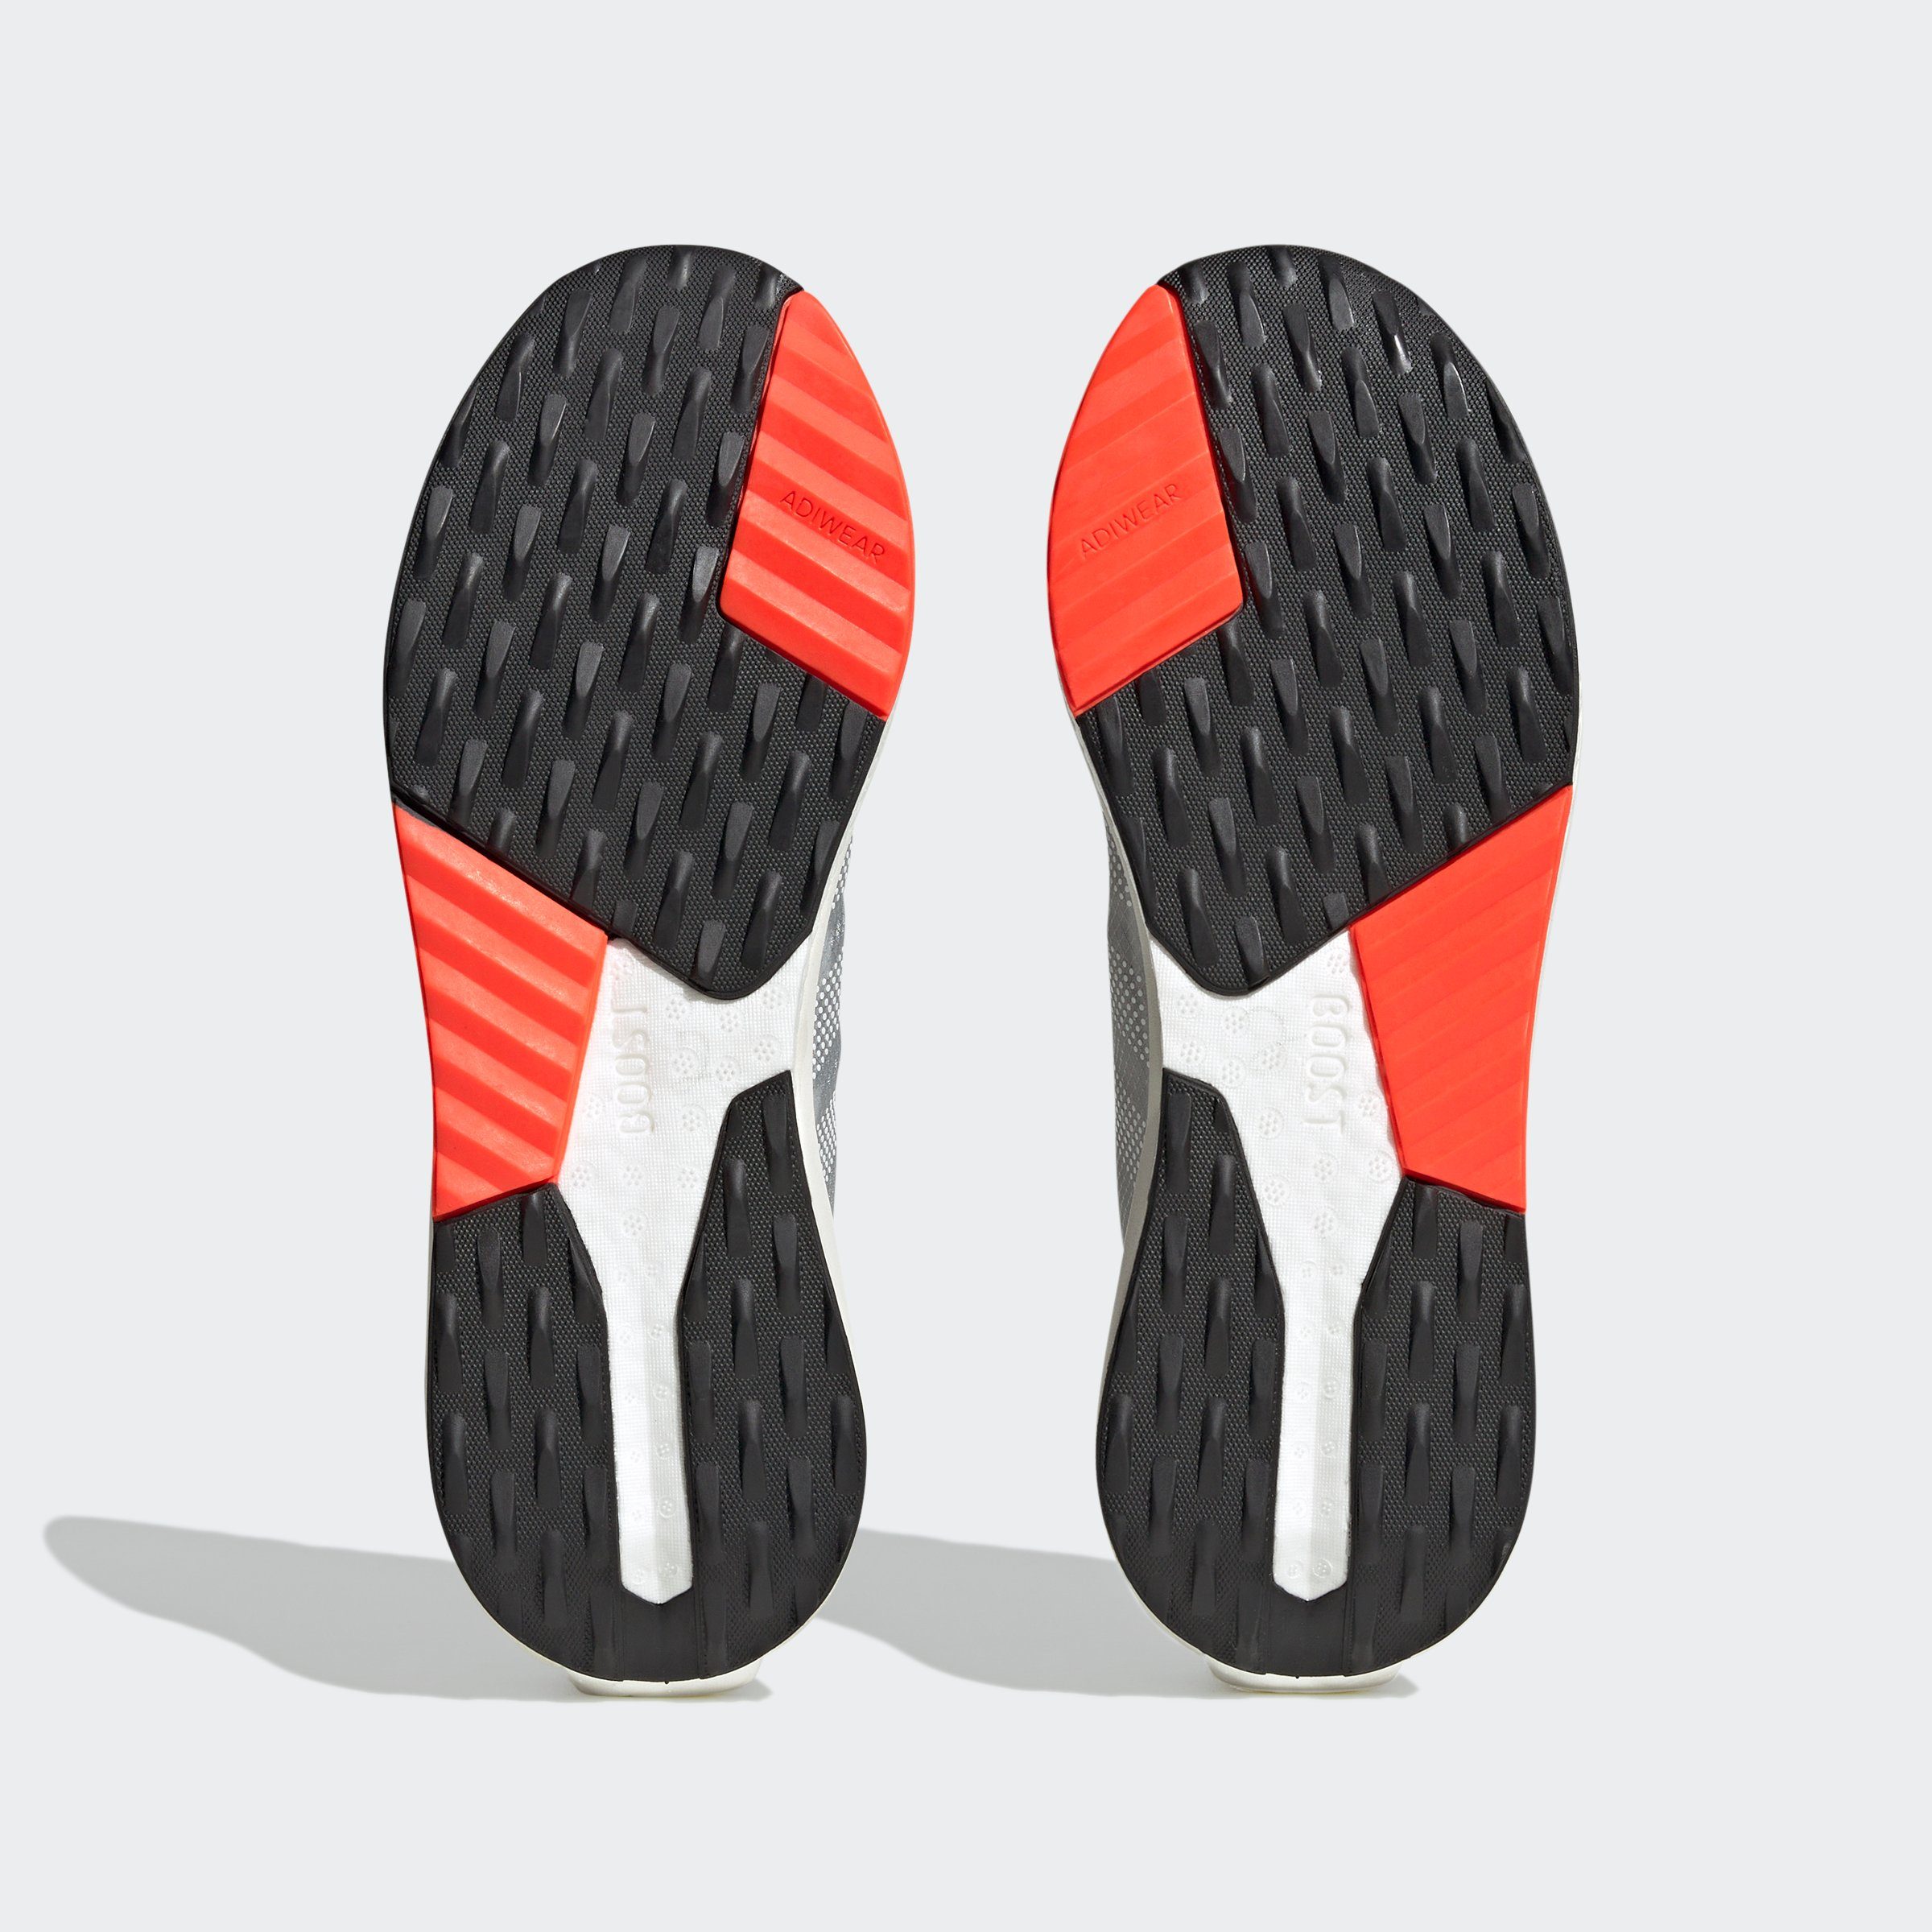 Solar / Core Black Core adidas Sportswear Red AVRYN Black / Sneaker